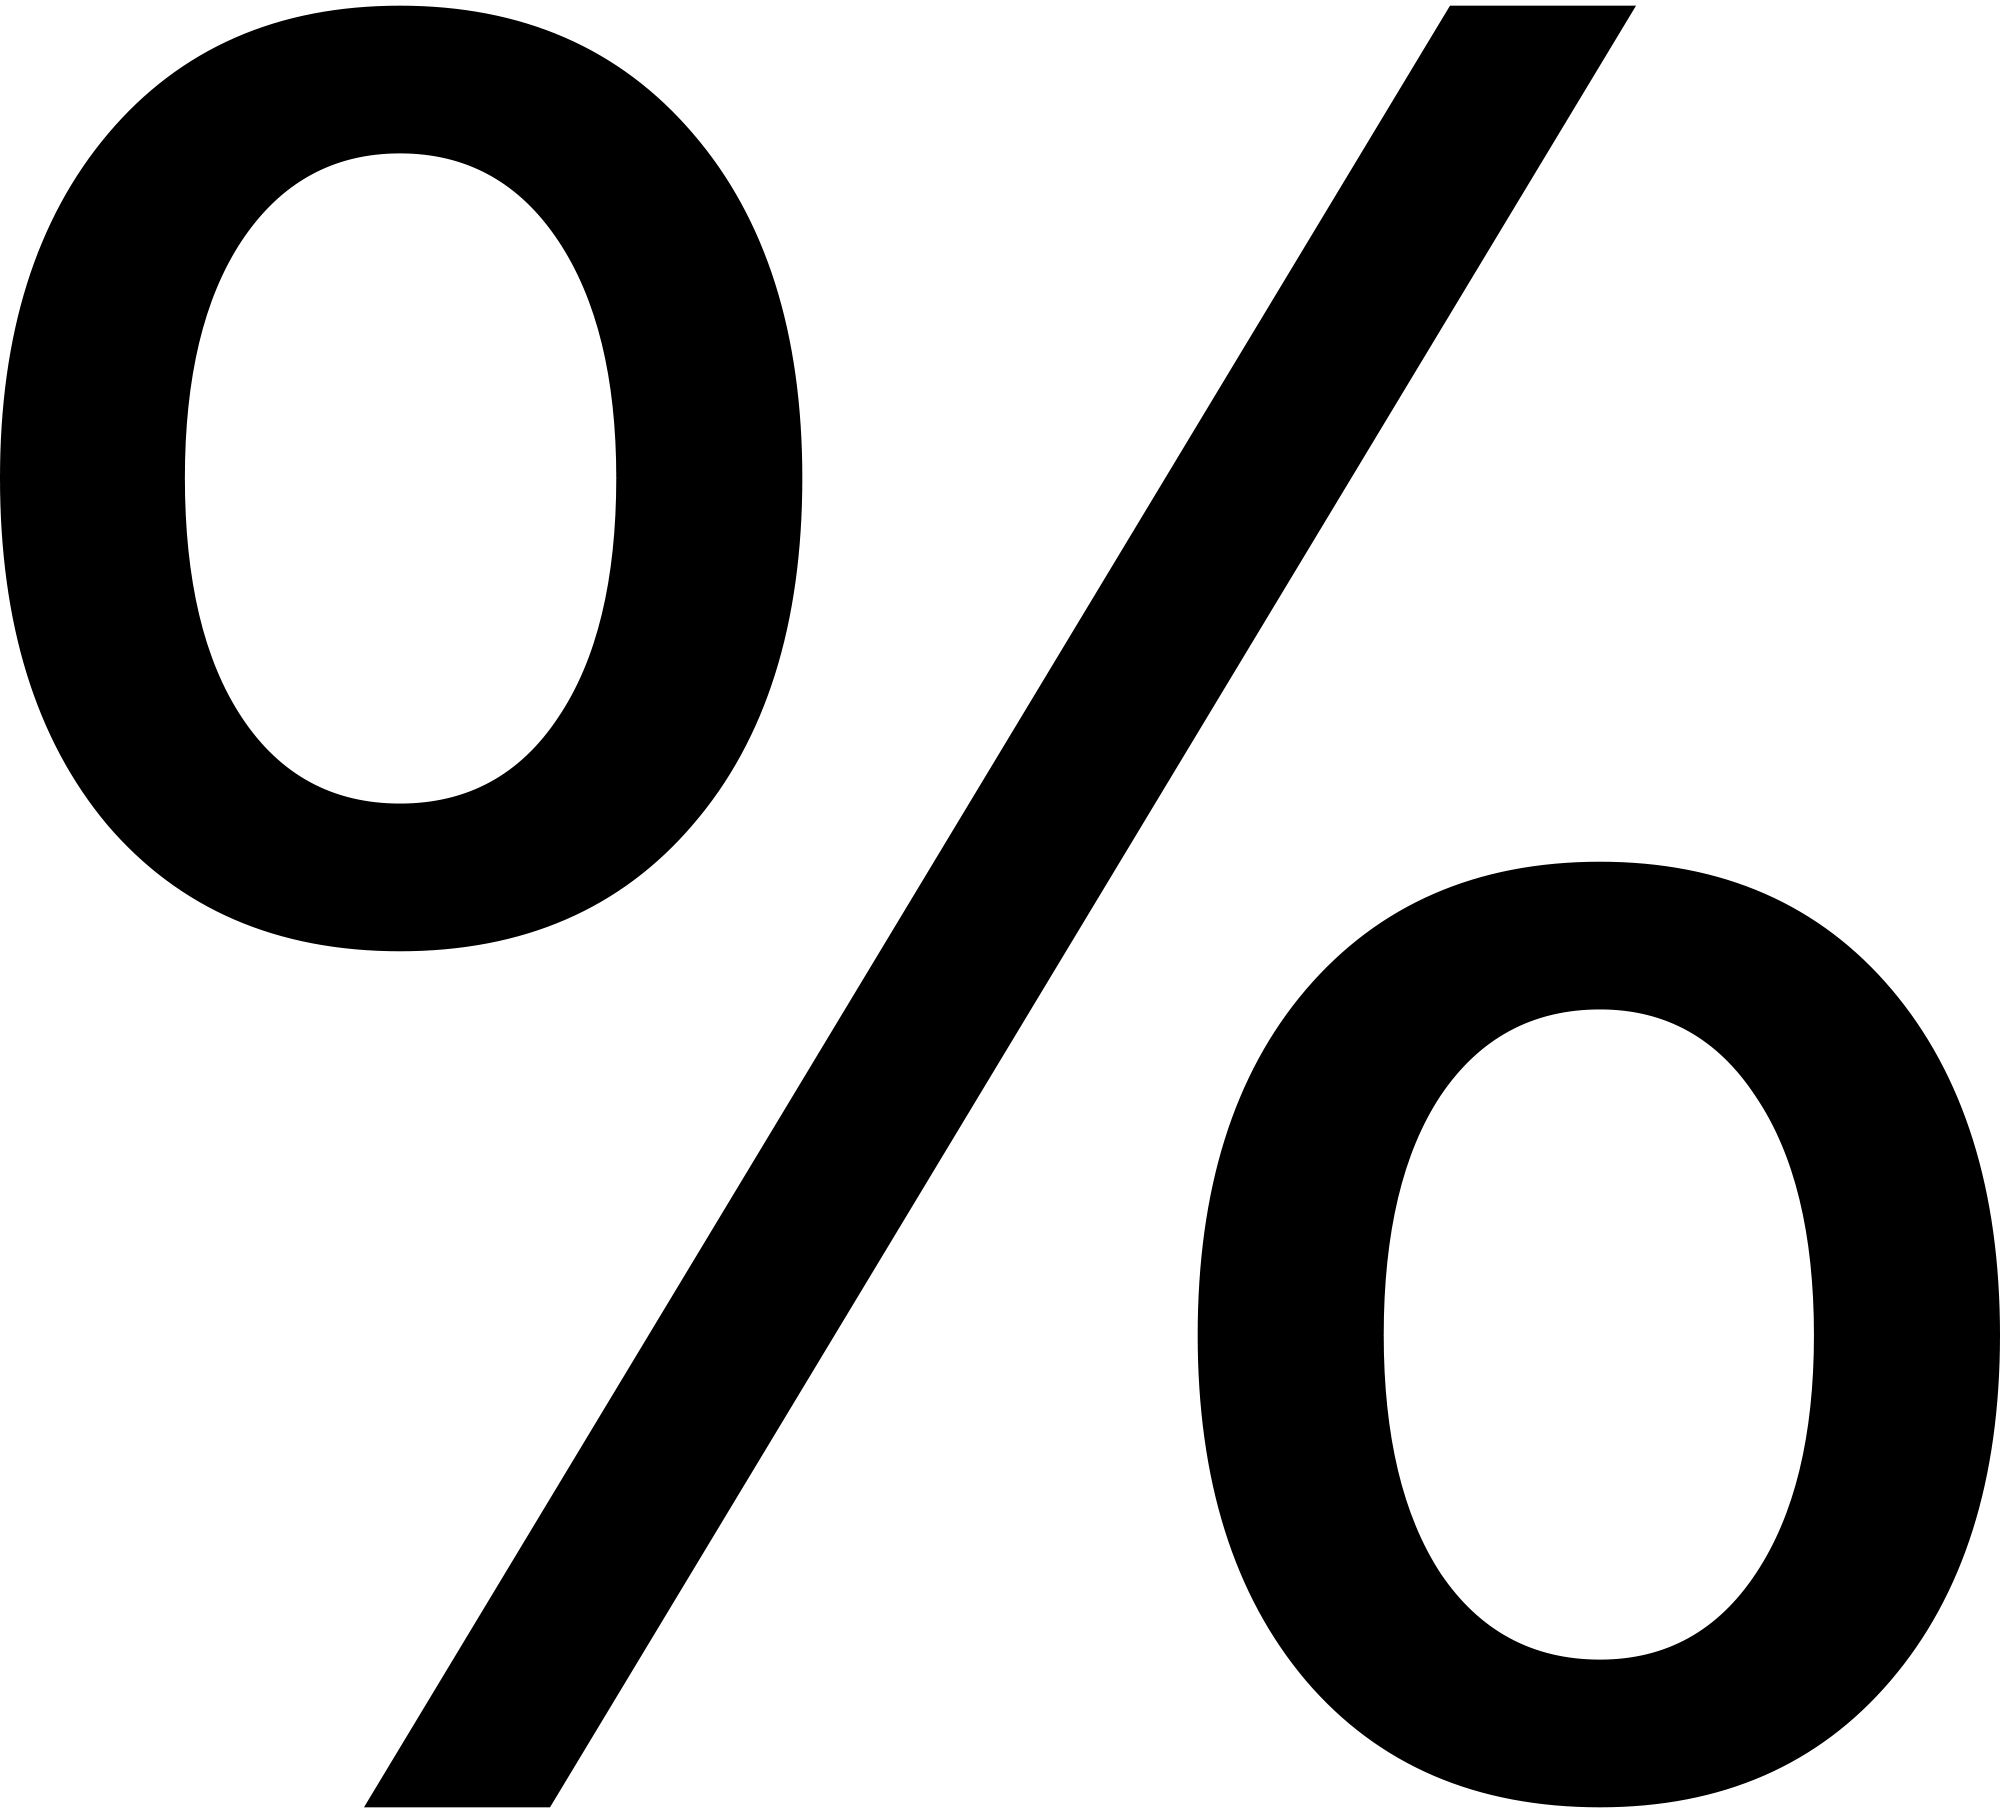 ratios-and-percents-percents-quiz-quizizz